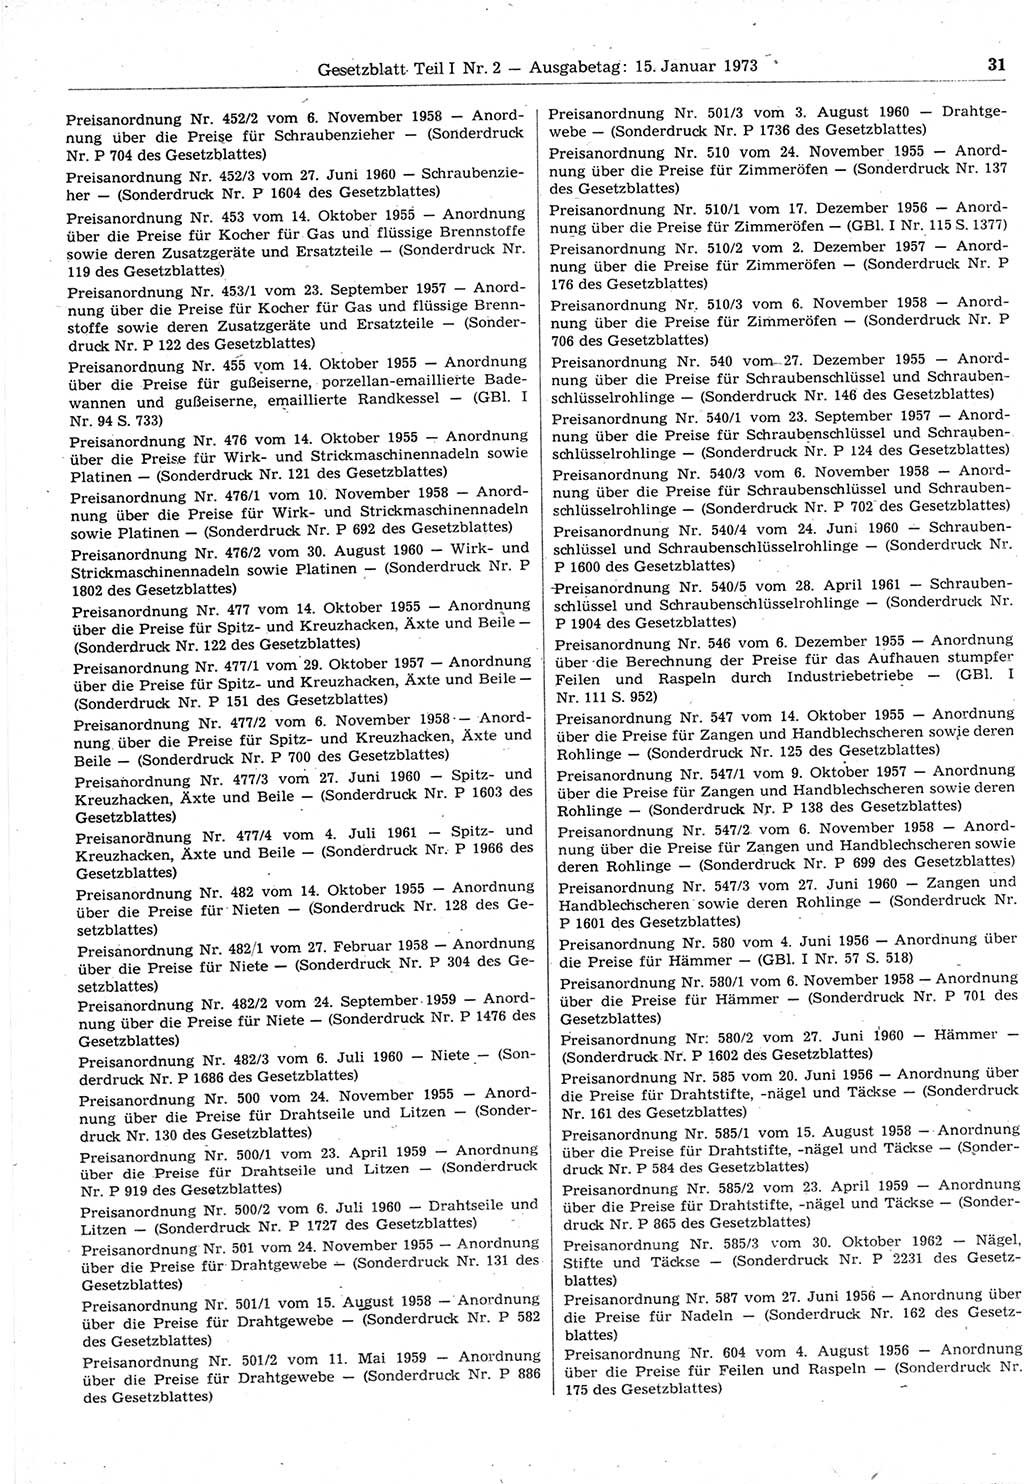 Gesetzblatt (GBl.) der Deutschen Demokratischen Republik (DDR) Teil Ⅰ 1973, Seite 31 (GBl. DDR Ⅰ 1973, S. 31)